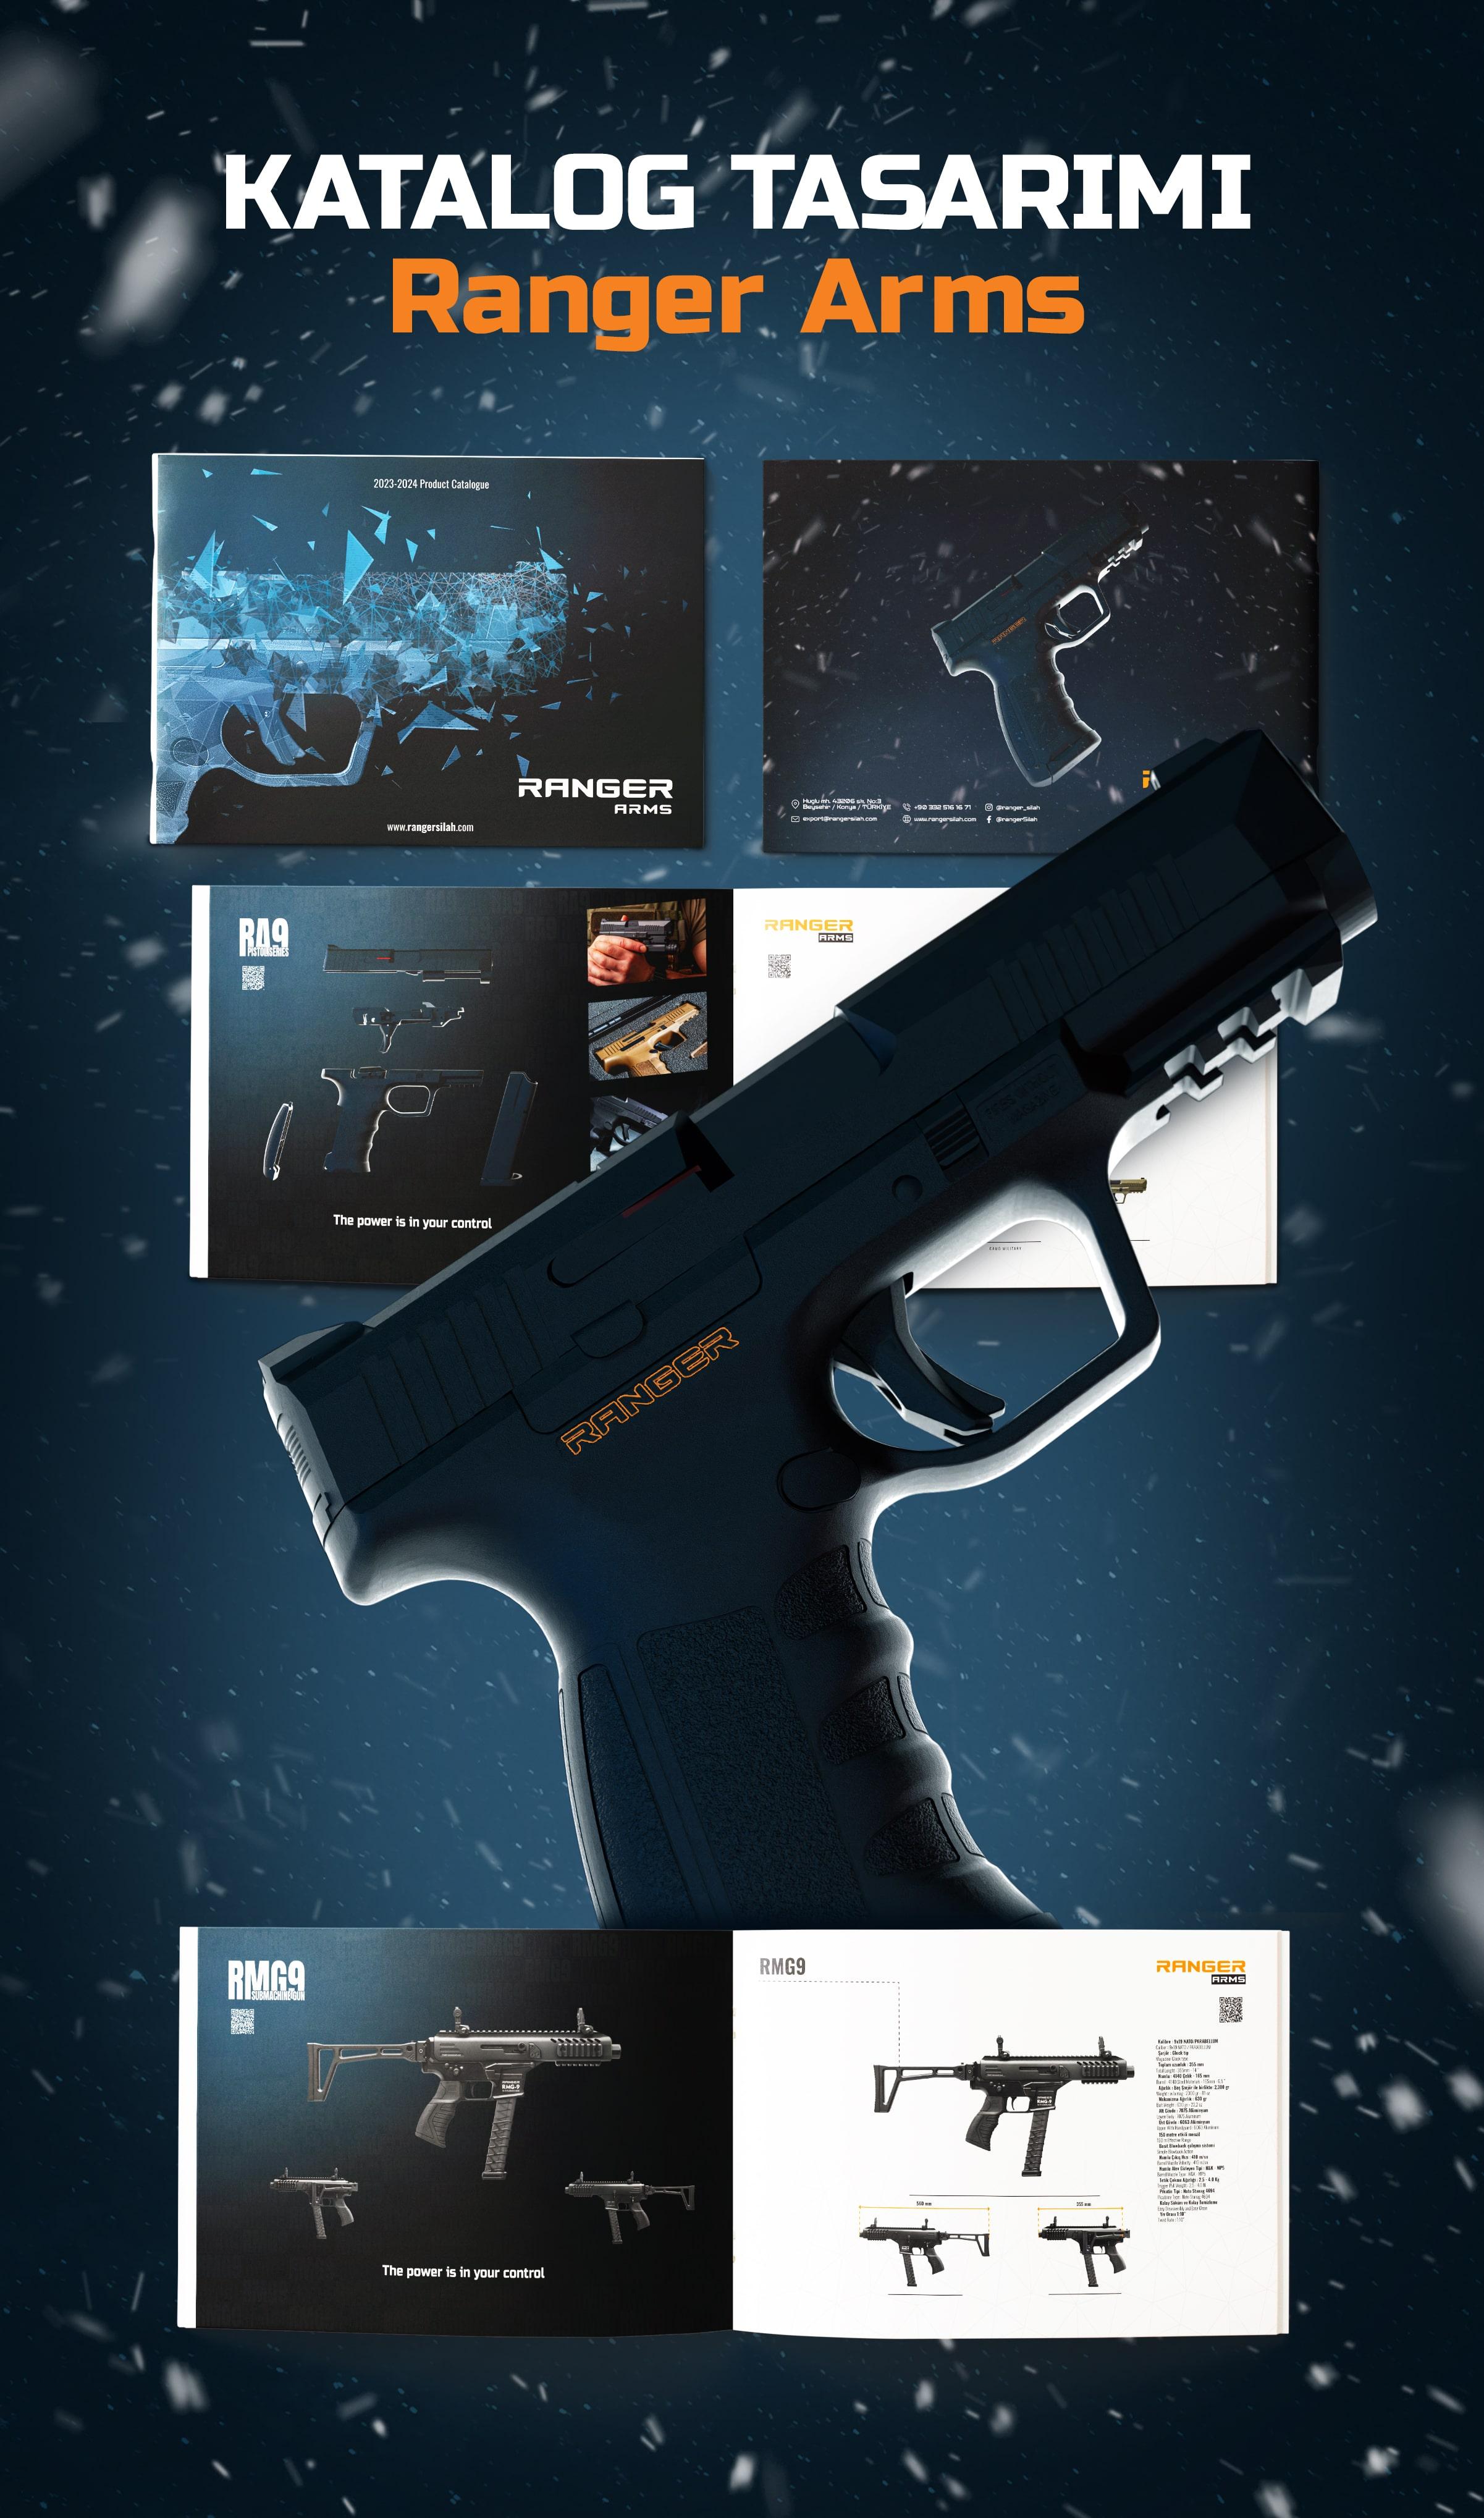 Ranger Arms Katalog Tasarımı